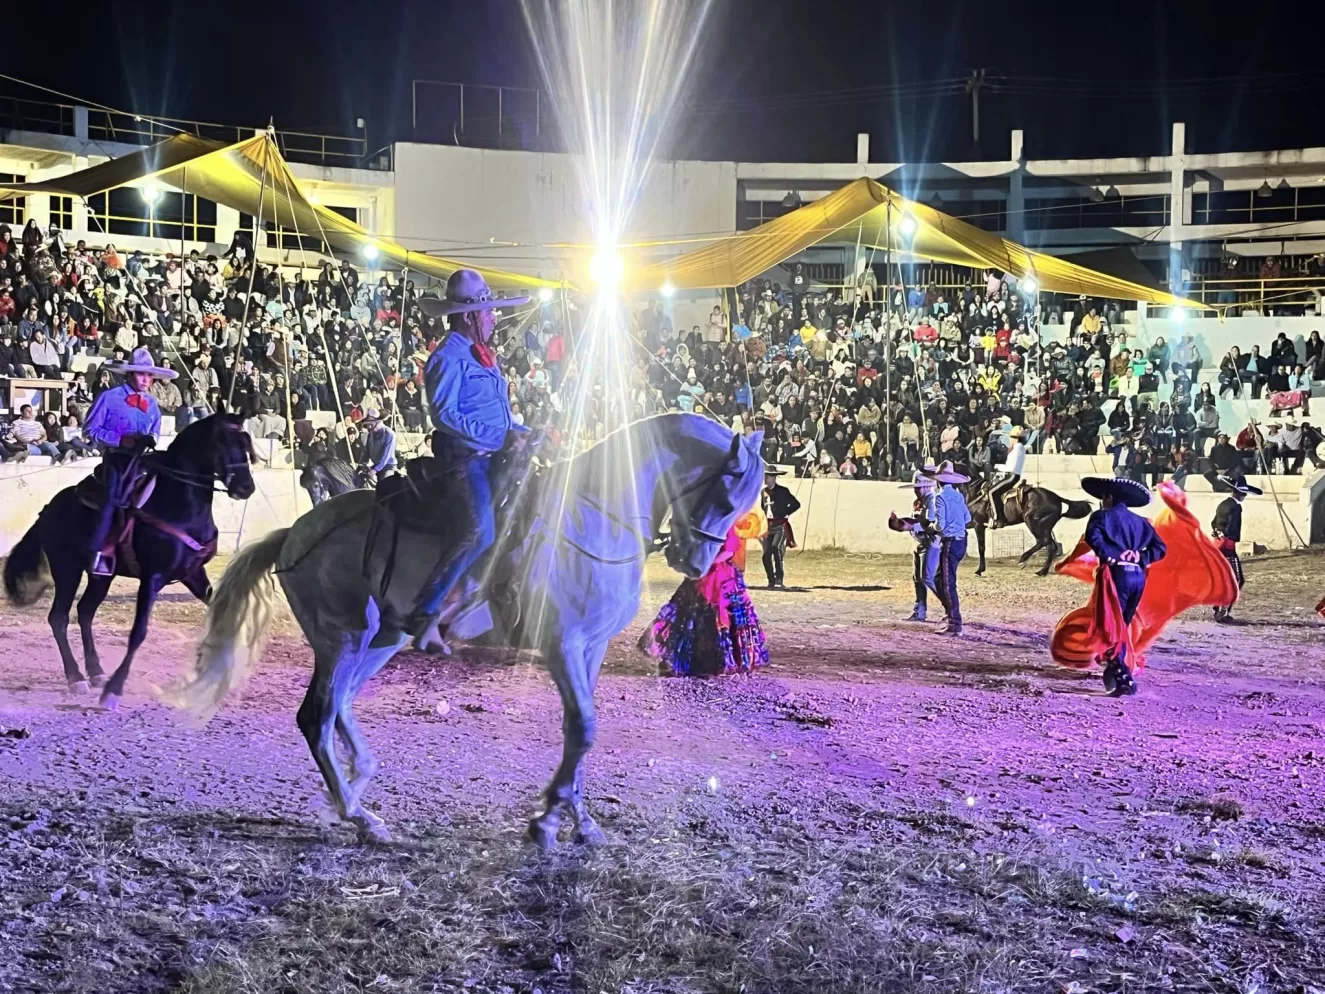 Show de caballos en la Feria texcaltitlán en el estado de méxico